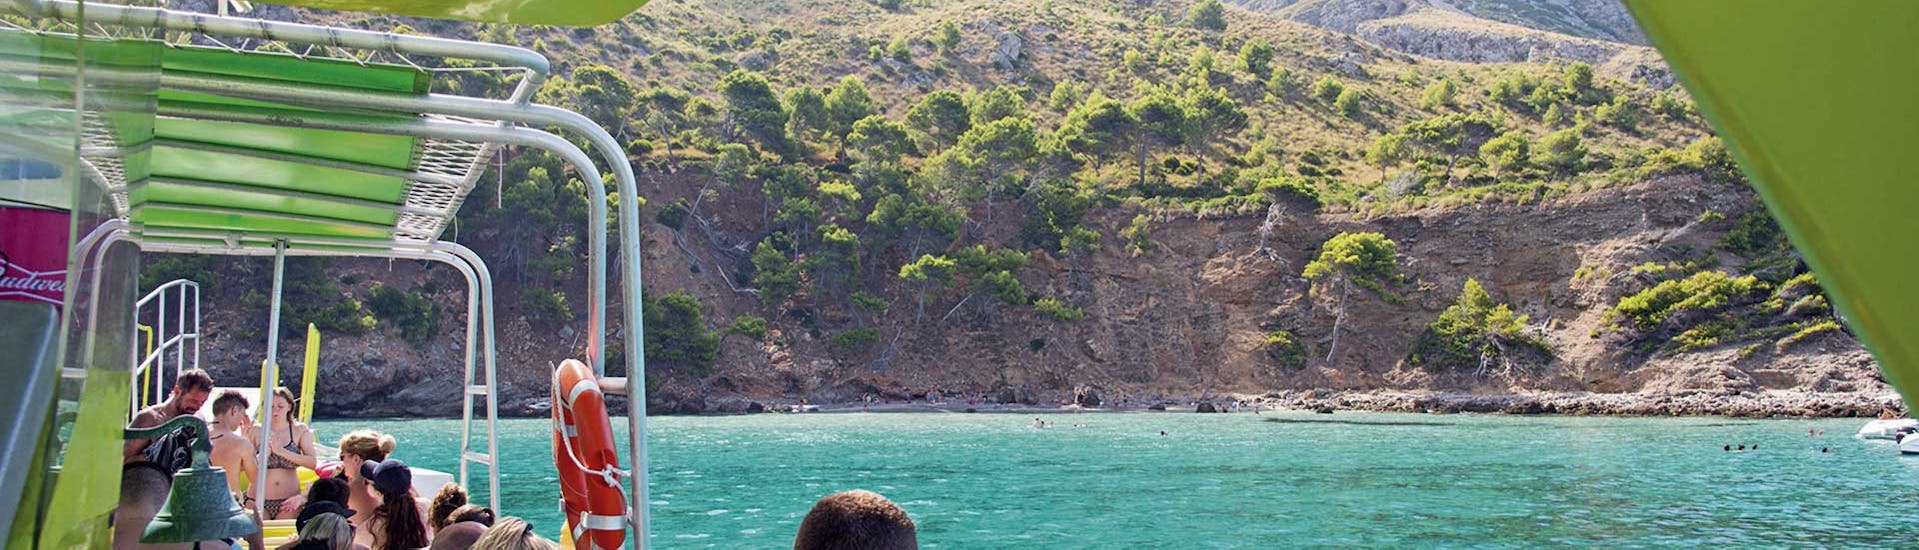 Paseo en barco de Alcúdia a Parc Natural de Llevant  con baño en el mar.